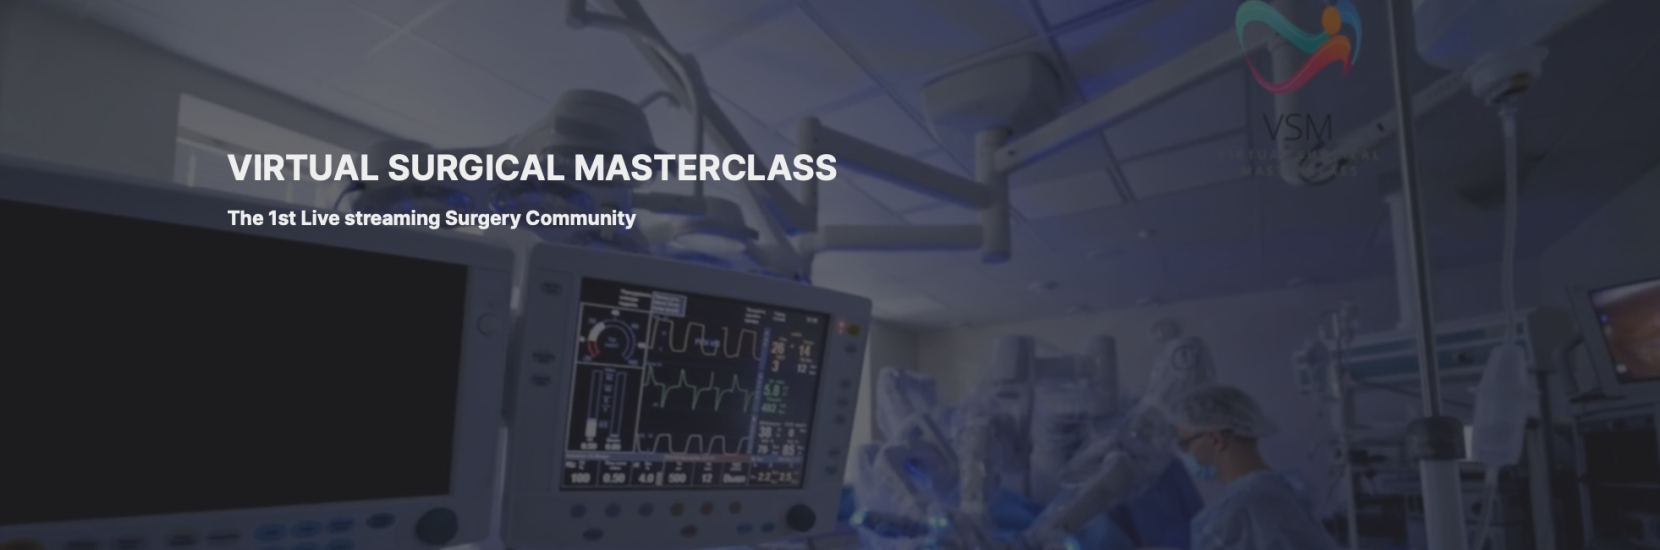 La nouvelle plateforme Virtual Surgical Masterclass révolutionne la formation continue des chirurgiens